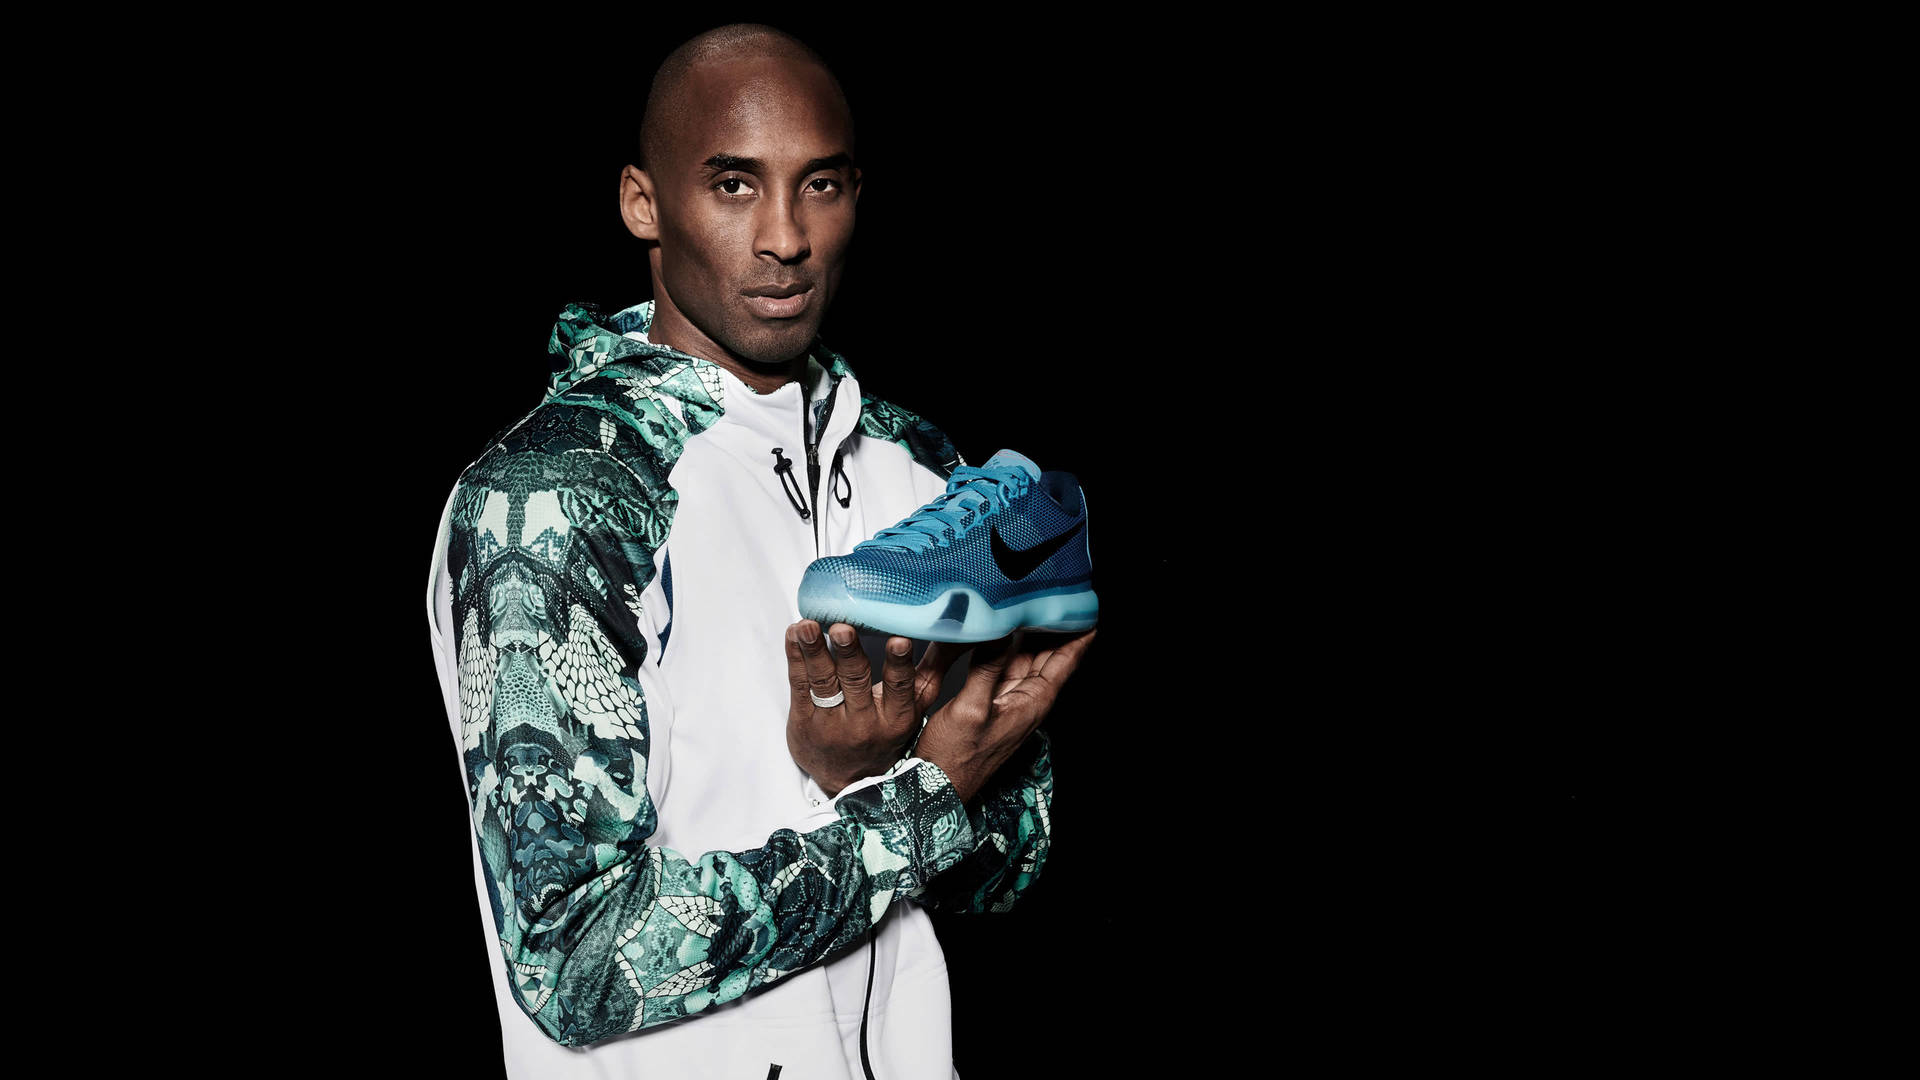 Kobe Bryant Modeling Nike Shoe 4K Wallpaper